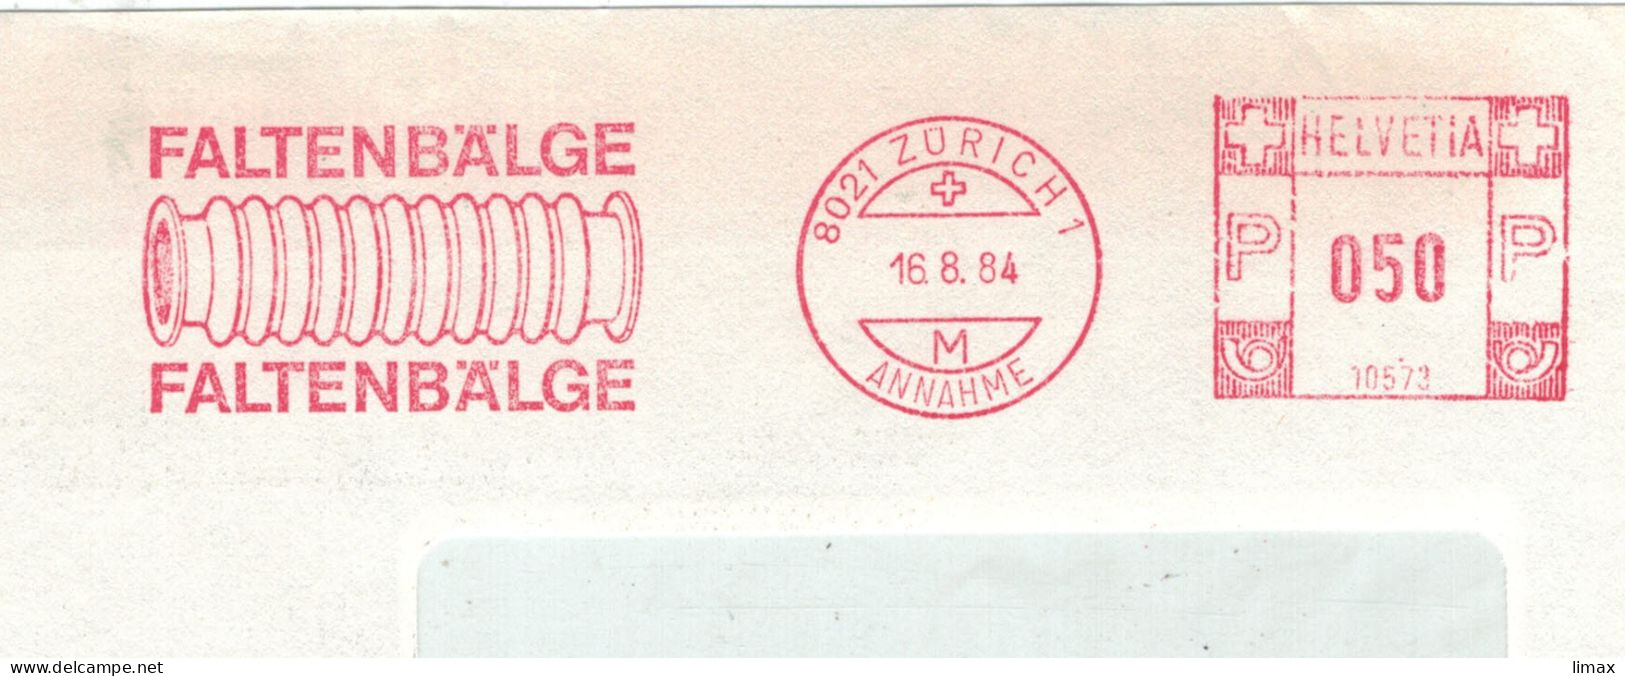 8021 Zürich 1984 Annahme Faltenbälge No. 10573 - Aufsatz Für Fotoapparate Nahaufnahmen - Affranchissements Mécaniques